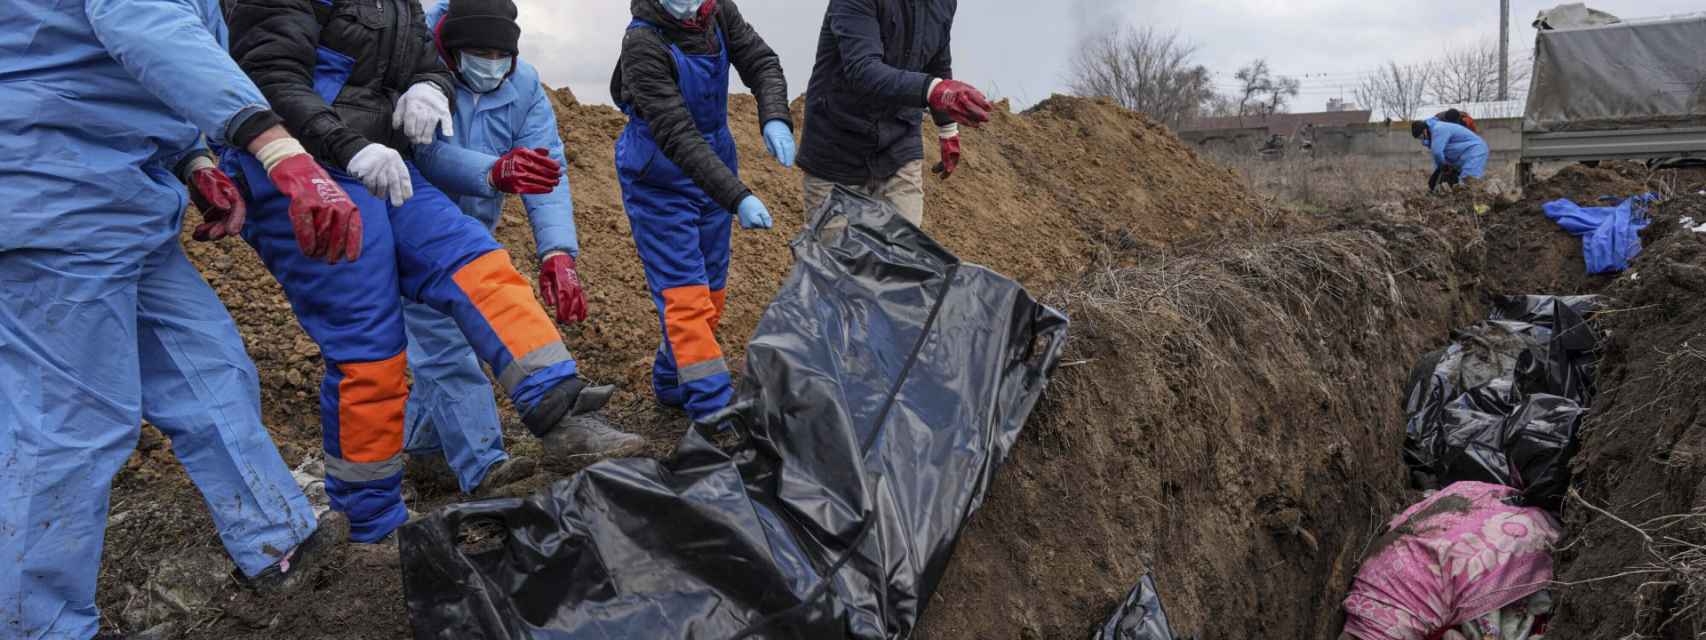 Los cadáveres se colocan en una fosa común en las afueras de Mariúpol, Ucrania, en marzos.